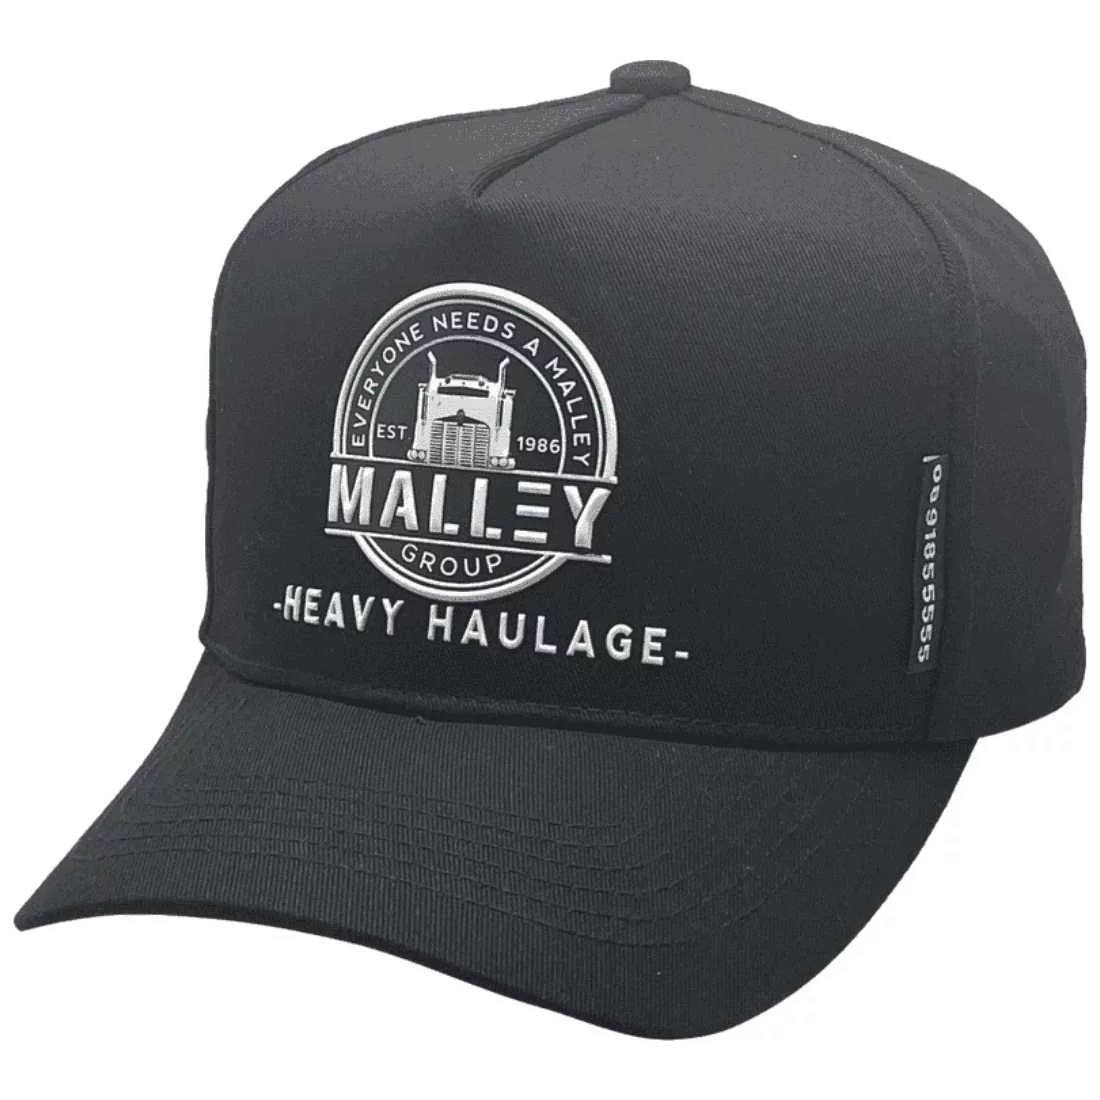 Malley Group Heavy Haulage Karratha WA -Basic Aussie Trucker Hat Cotton HP Black